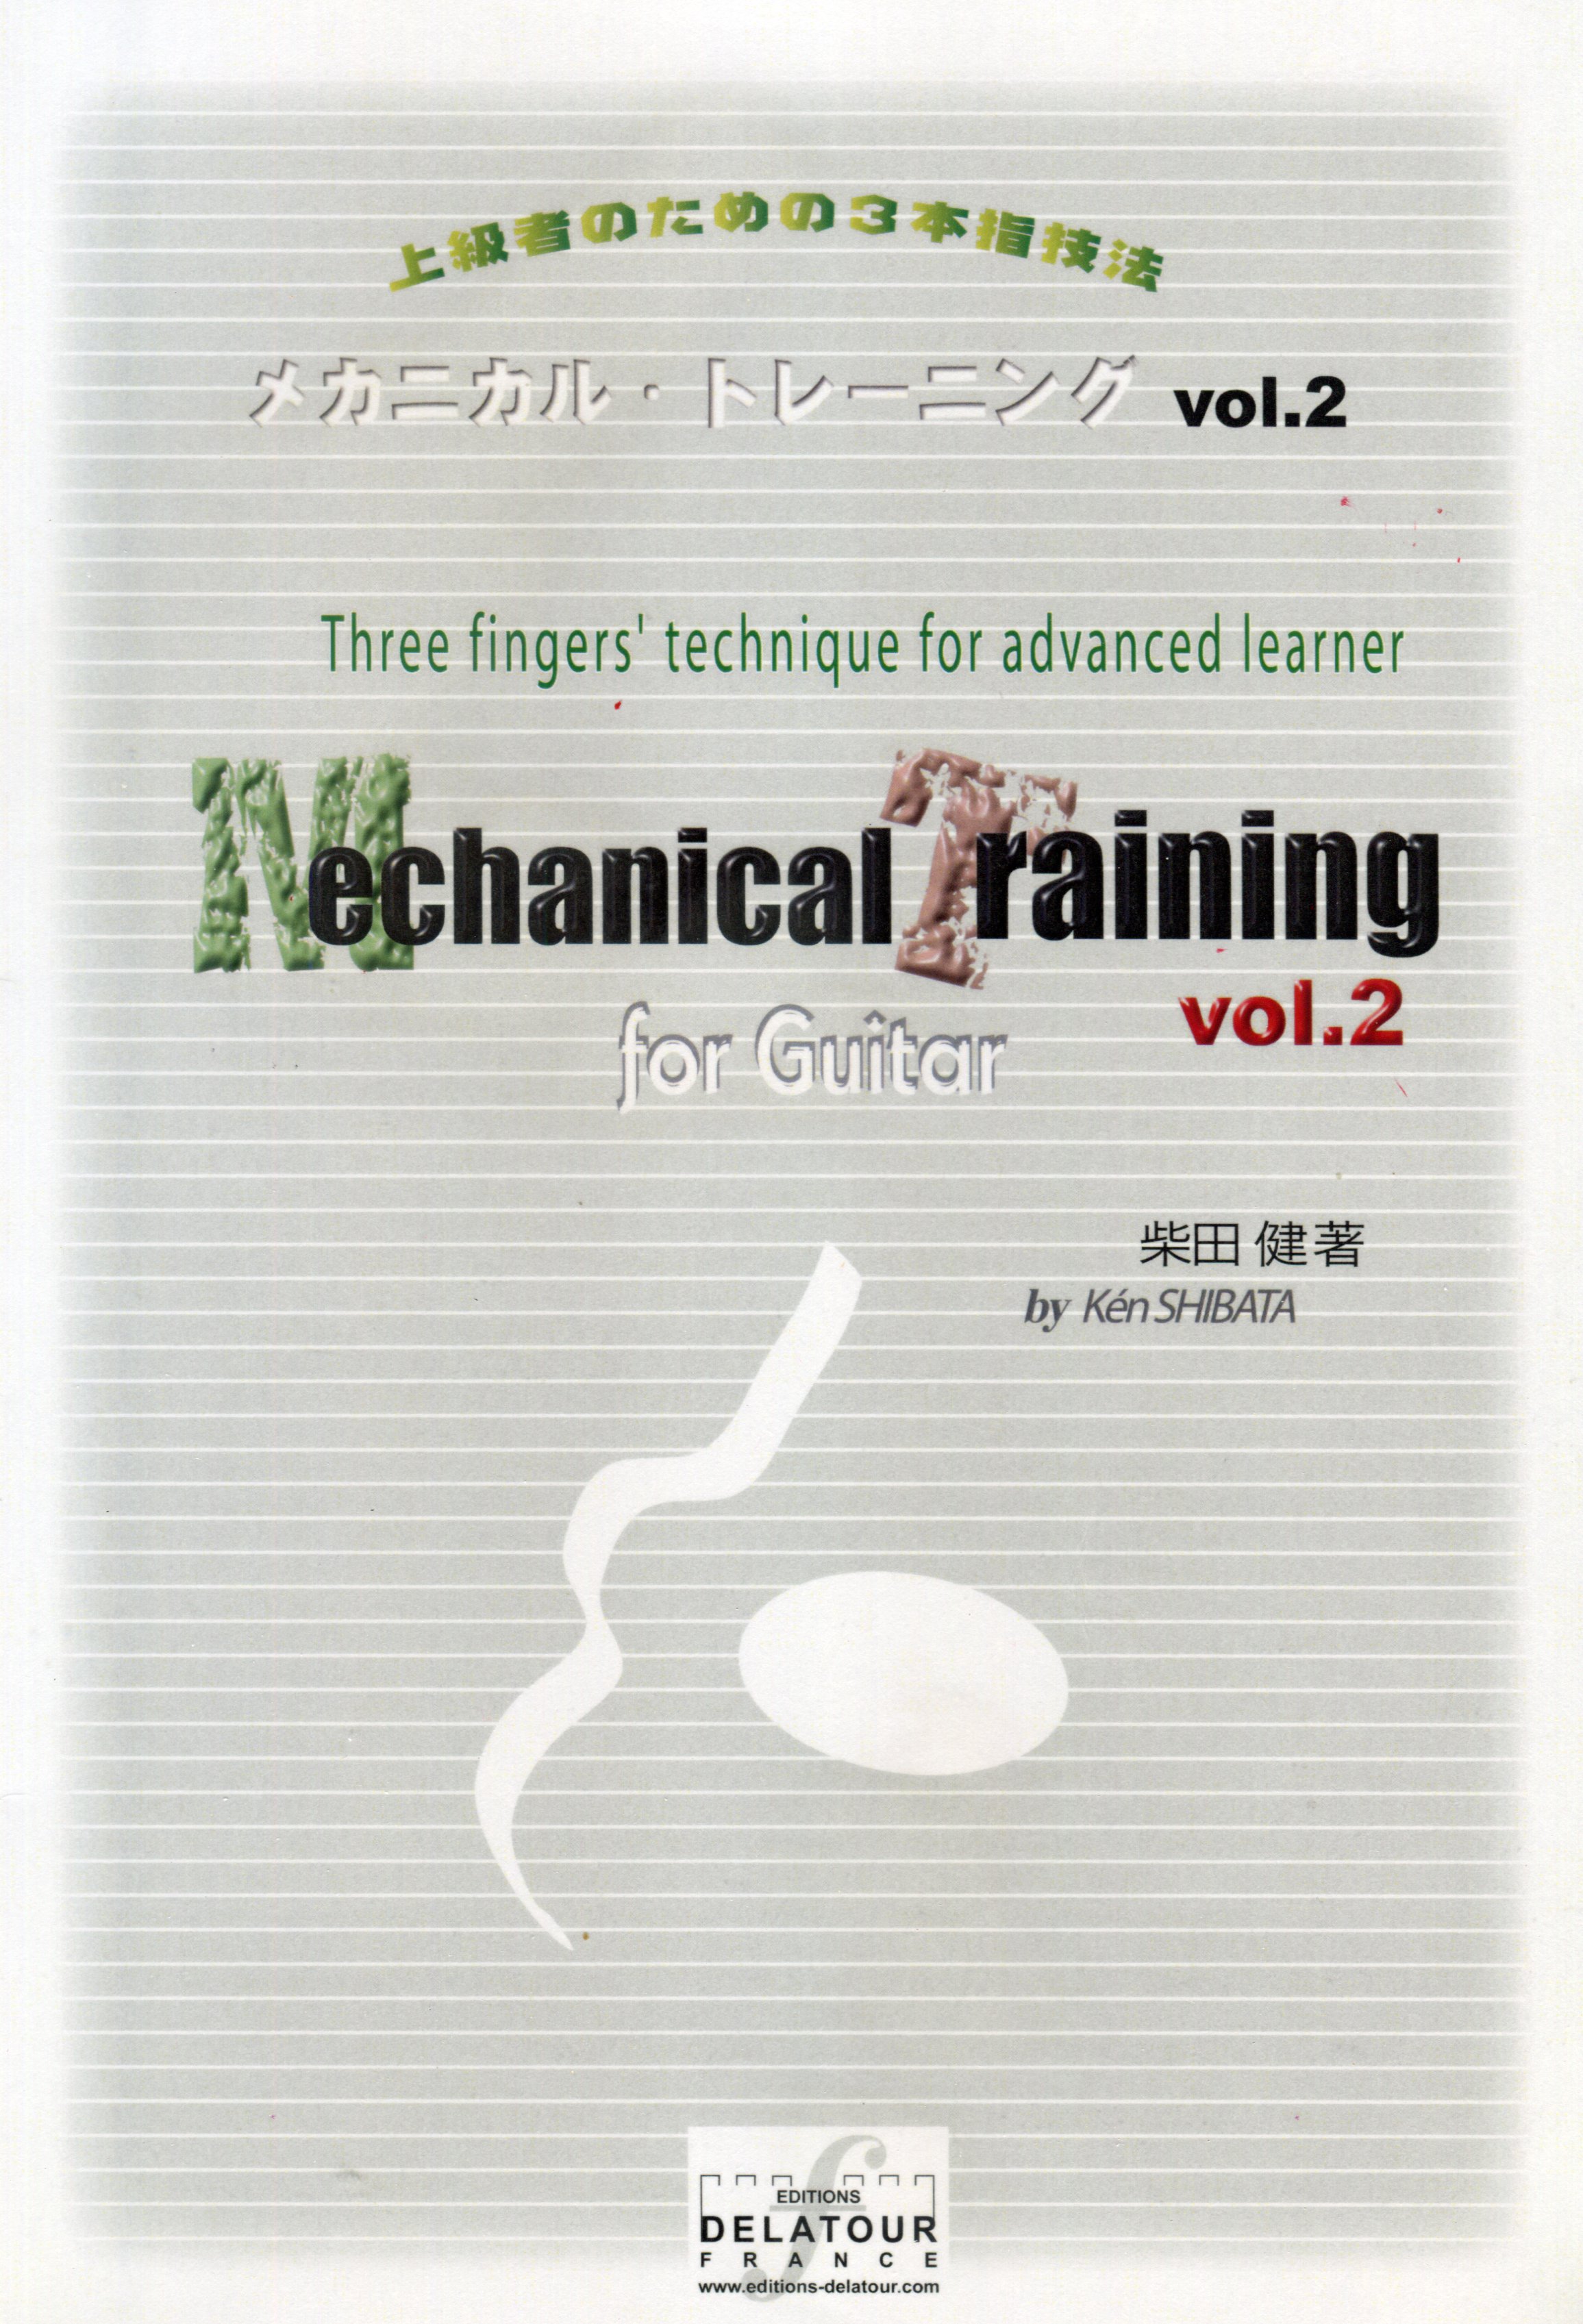 メカニカル トレーニング vol.2